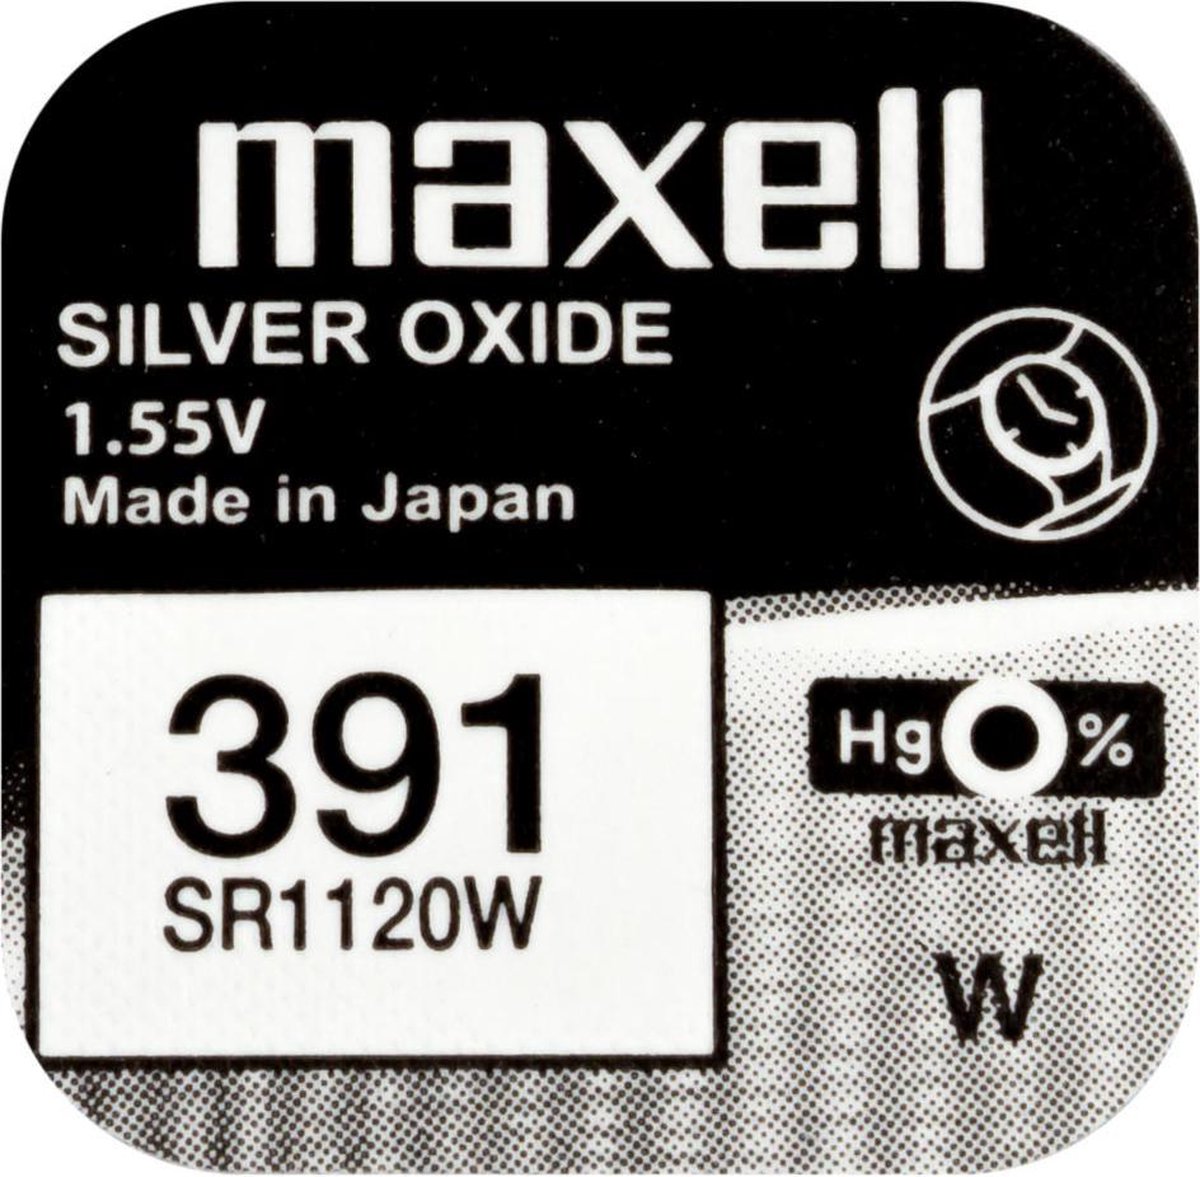 MAXELL 391 / SR1120W zilveroxide knoopcel horlogebatterij 2 (twee) stuks